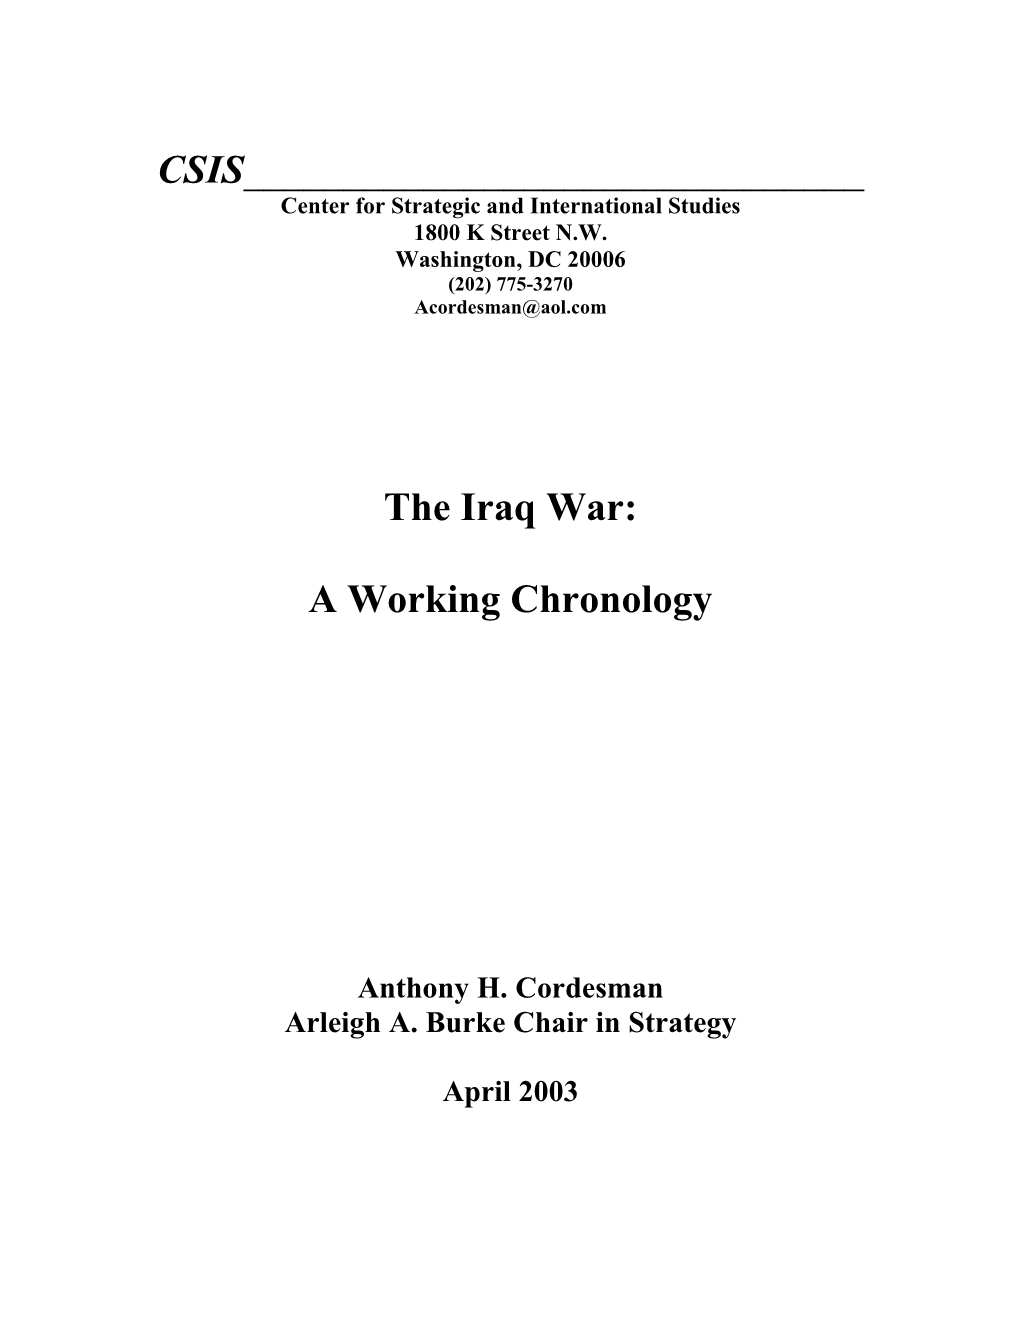 The Iraq War: a Working Chronology